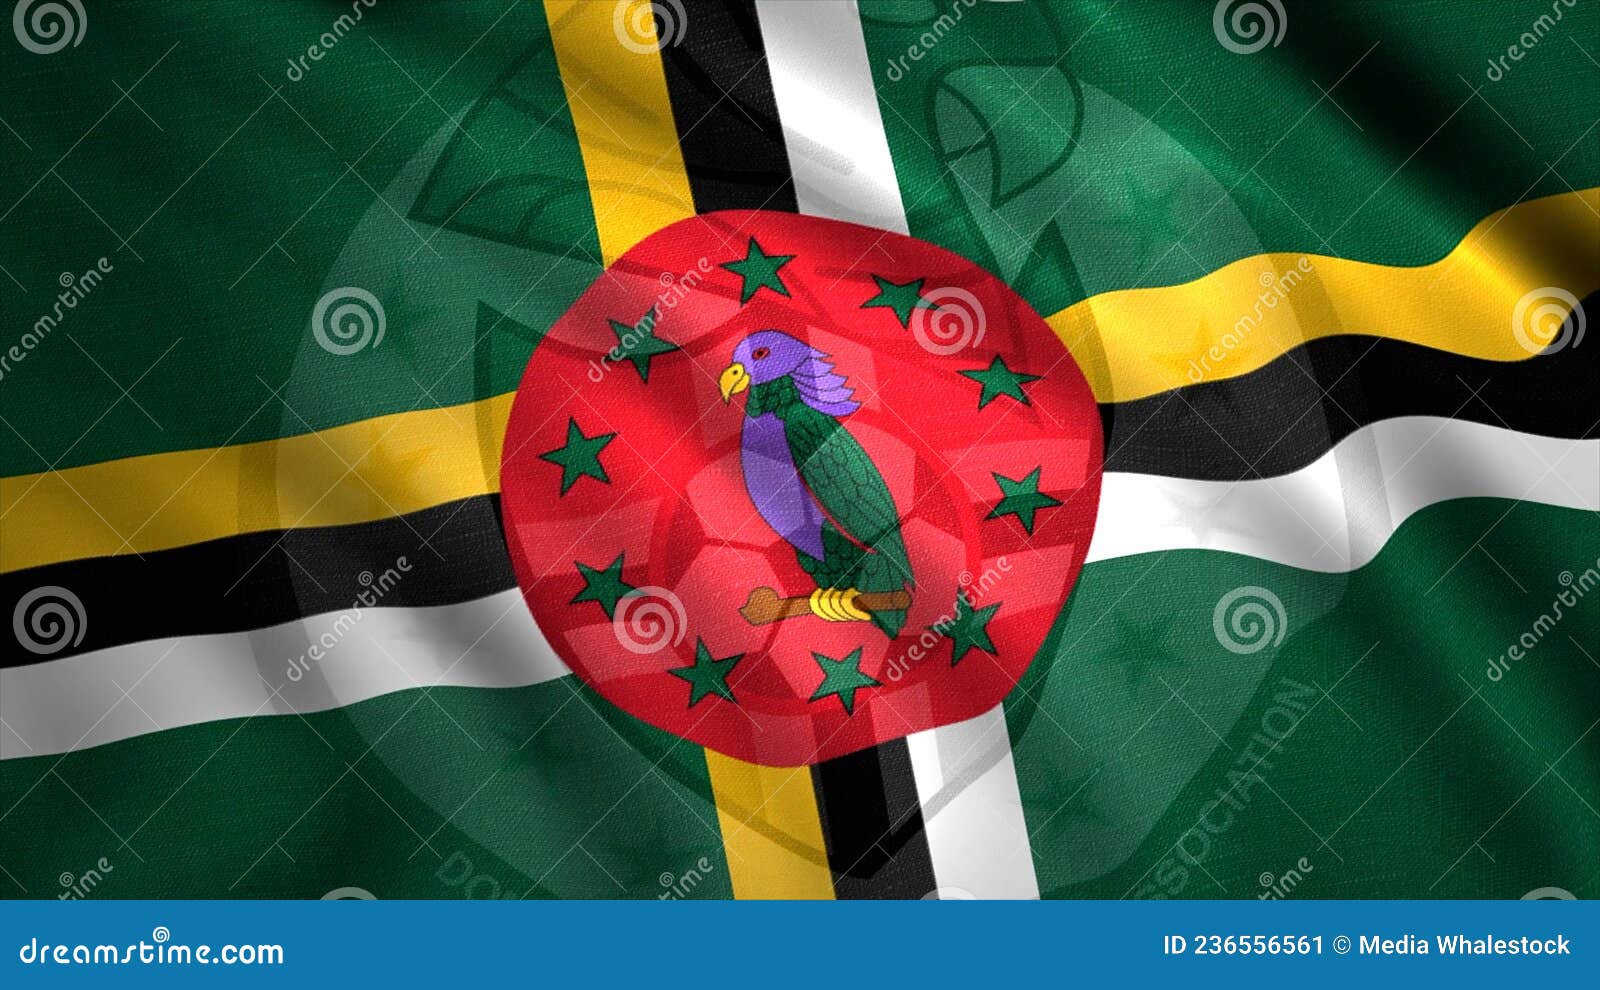 Hình ảnh chim nổi tiếng chỉ có ở quốc kỳ Dominica sẽ khiến bạn bất ngờ vì những chi tiết độc đáo và màu sắc tươi sáng của nó. Nếu bạn là một tín đồ của chim cảnh, hãy xem ngay ảnh này.